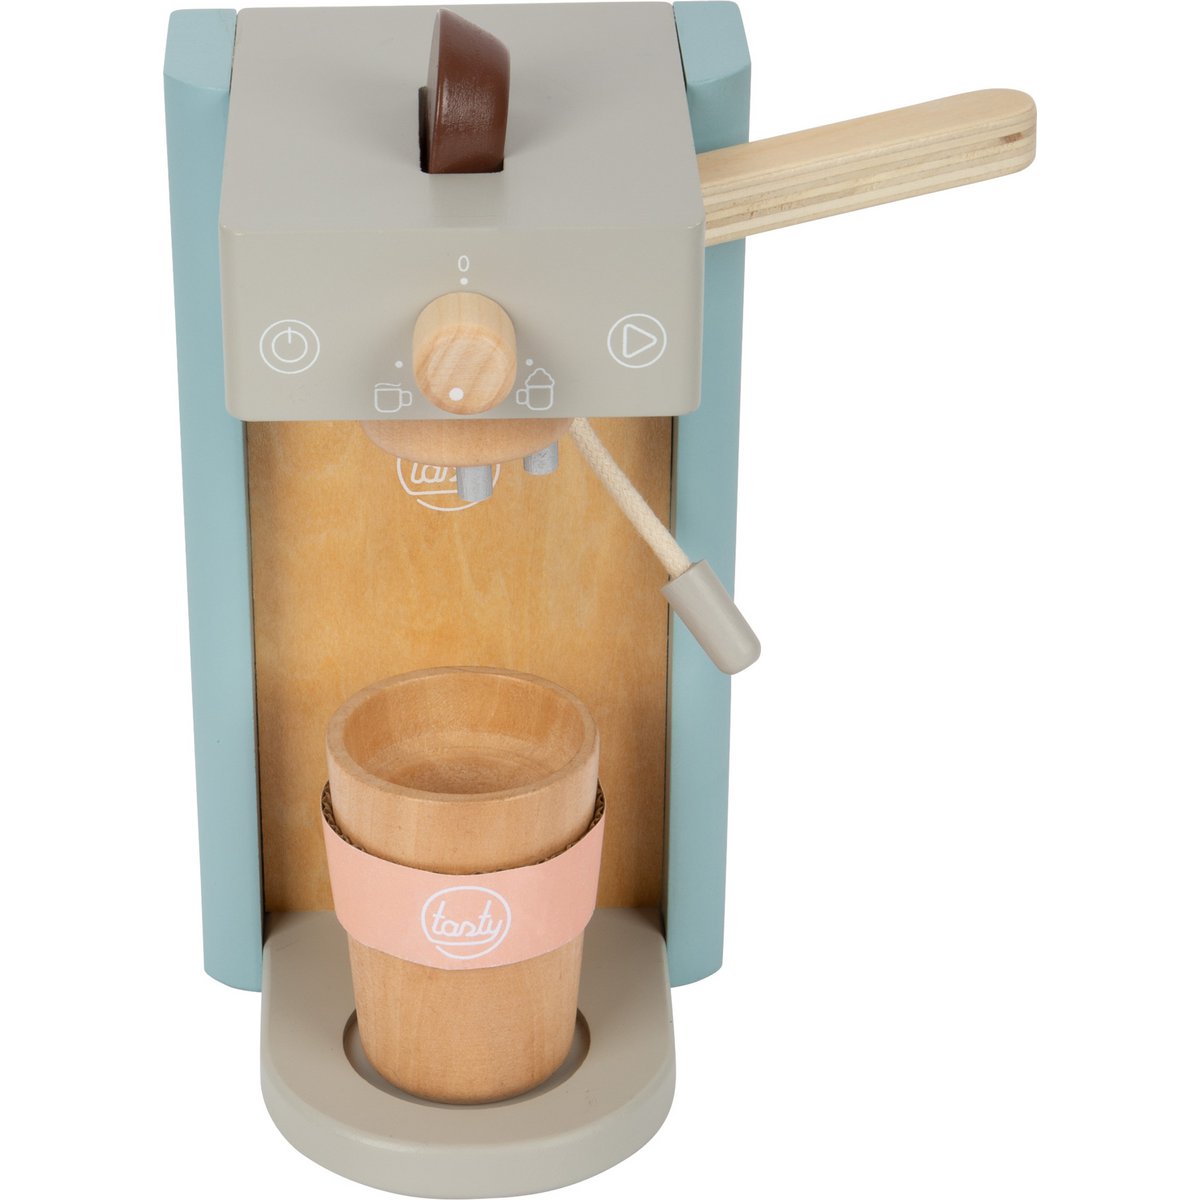 Tasty Wooden Coffee Machine Set